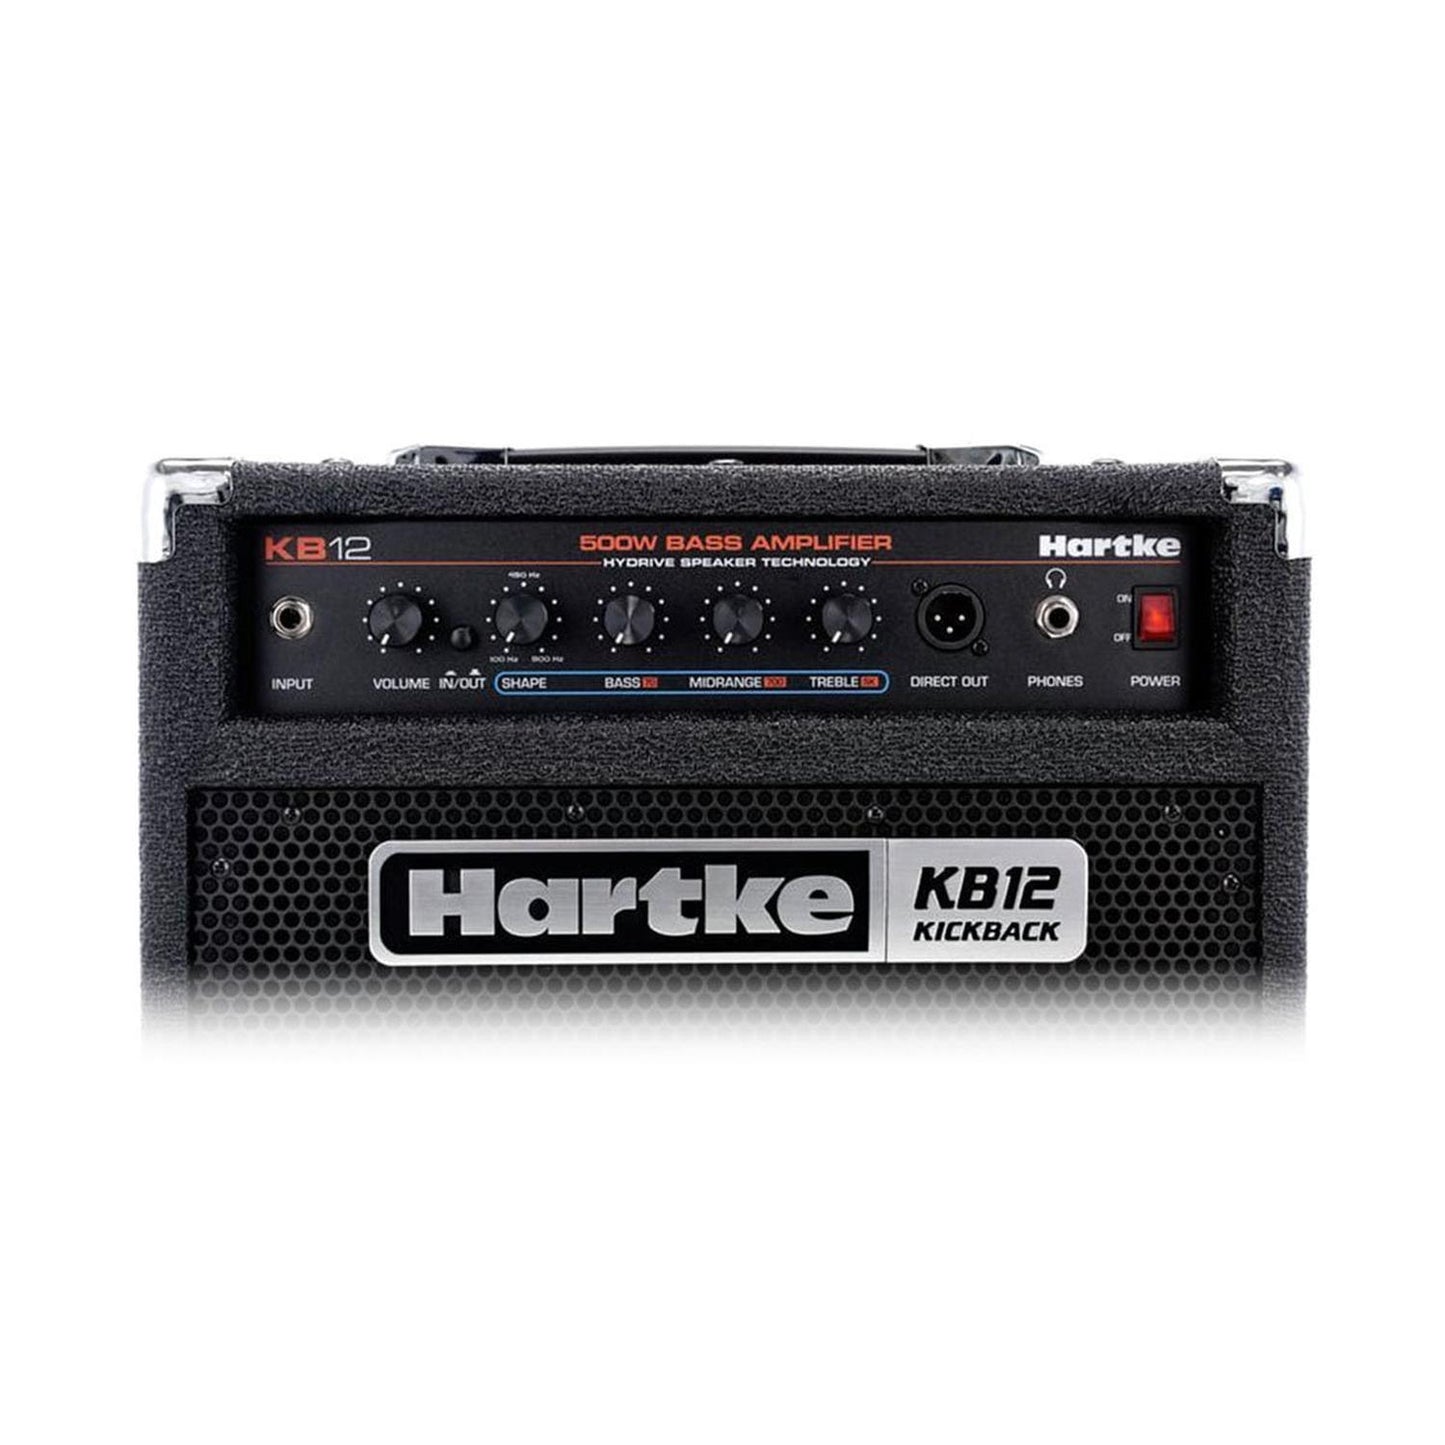 Amplificador de Bajo HMKB12 HARKTE